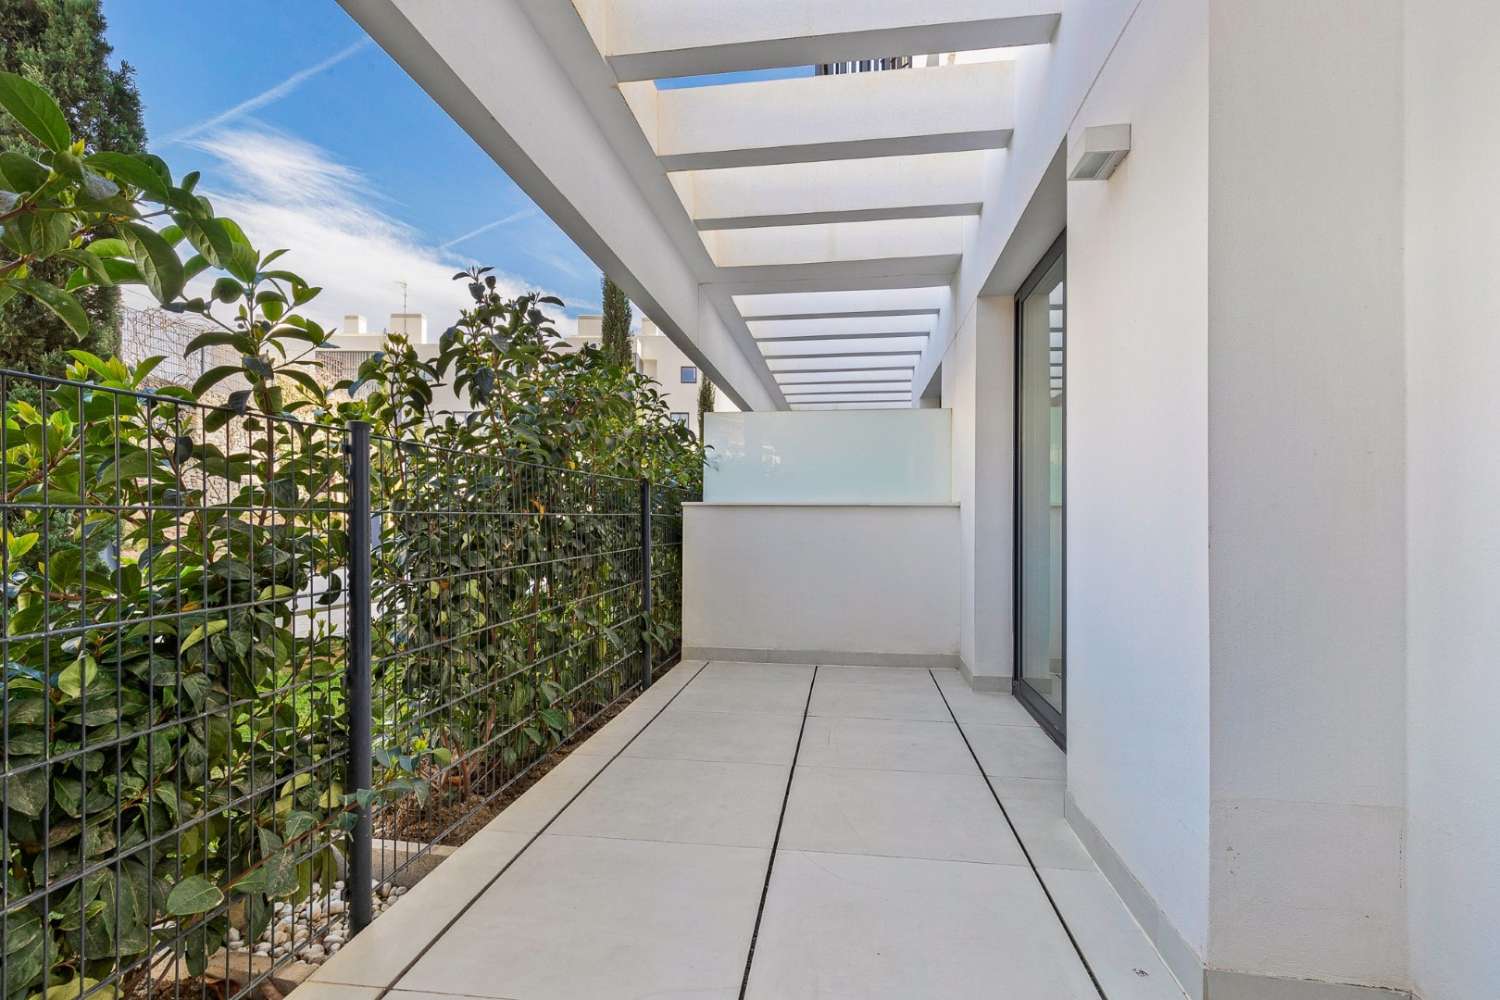 Fantástico piso con jardín privado situado en la urbanización Higueron West